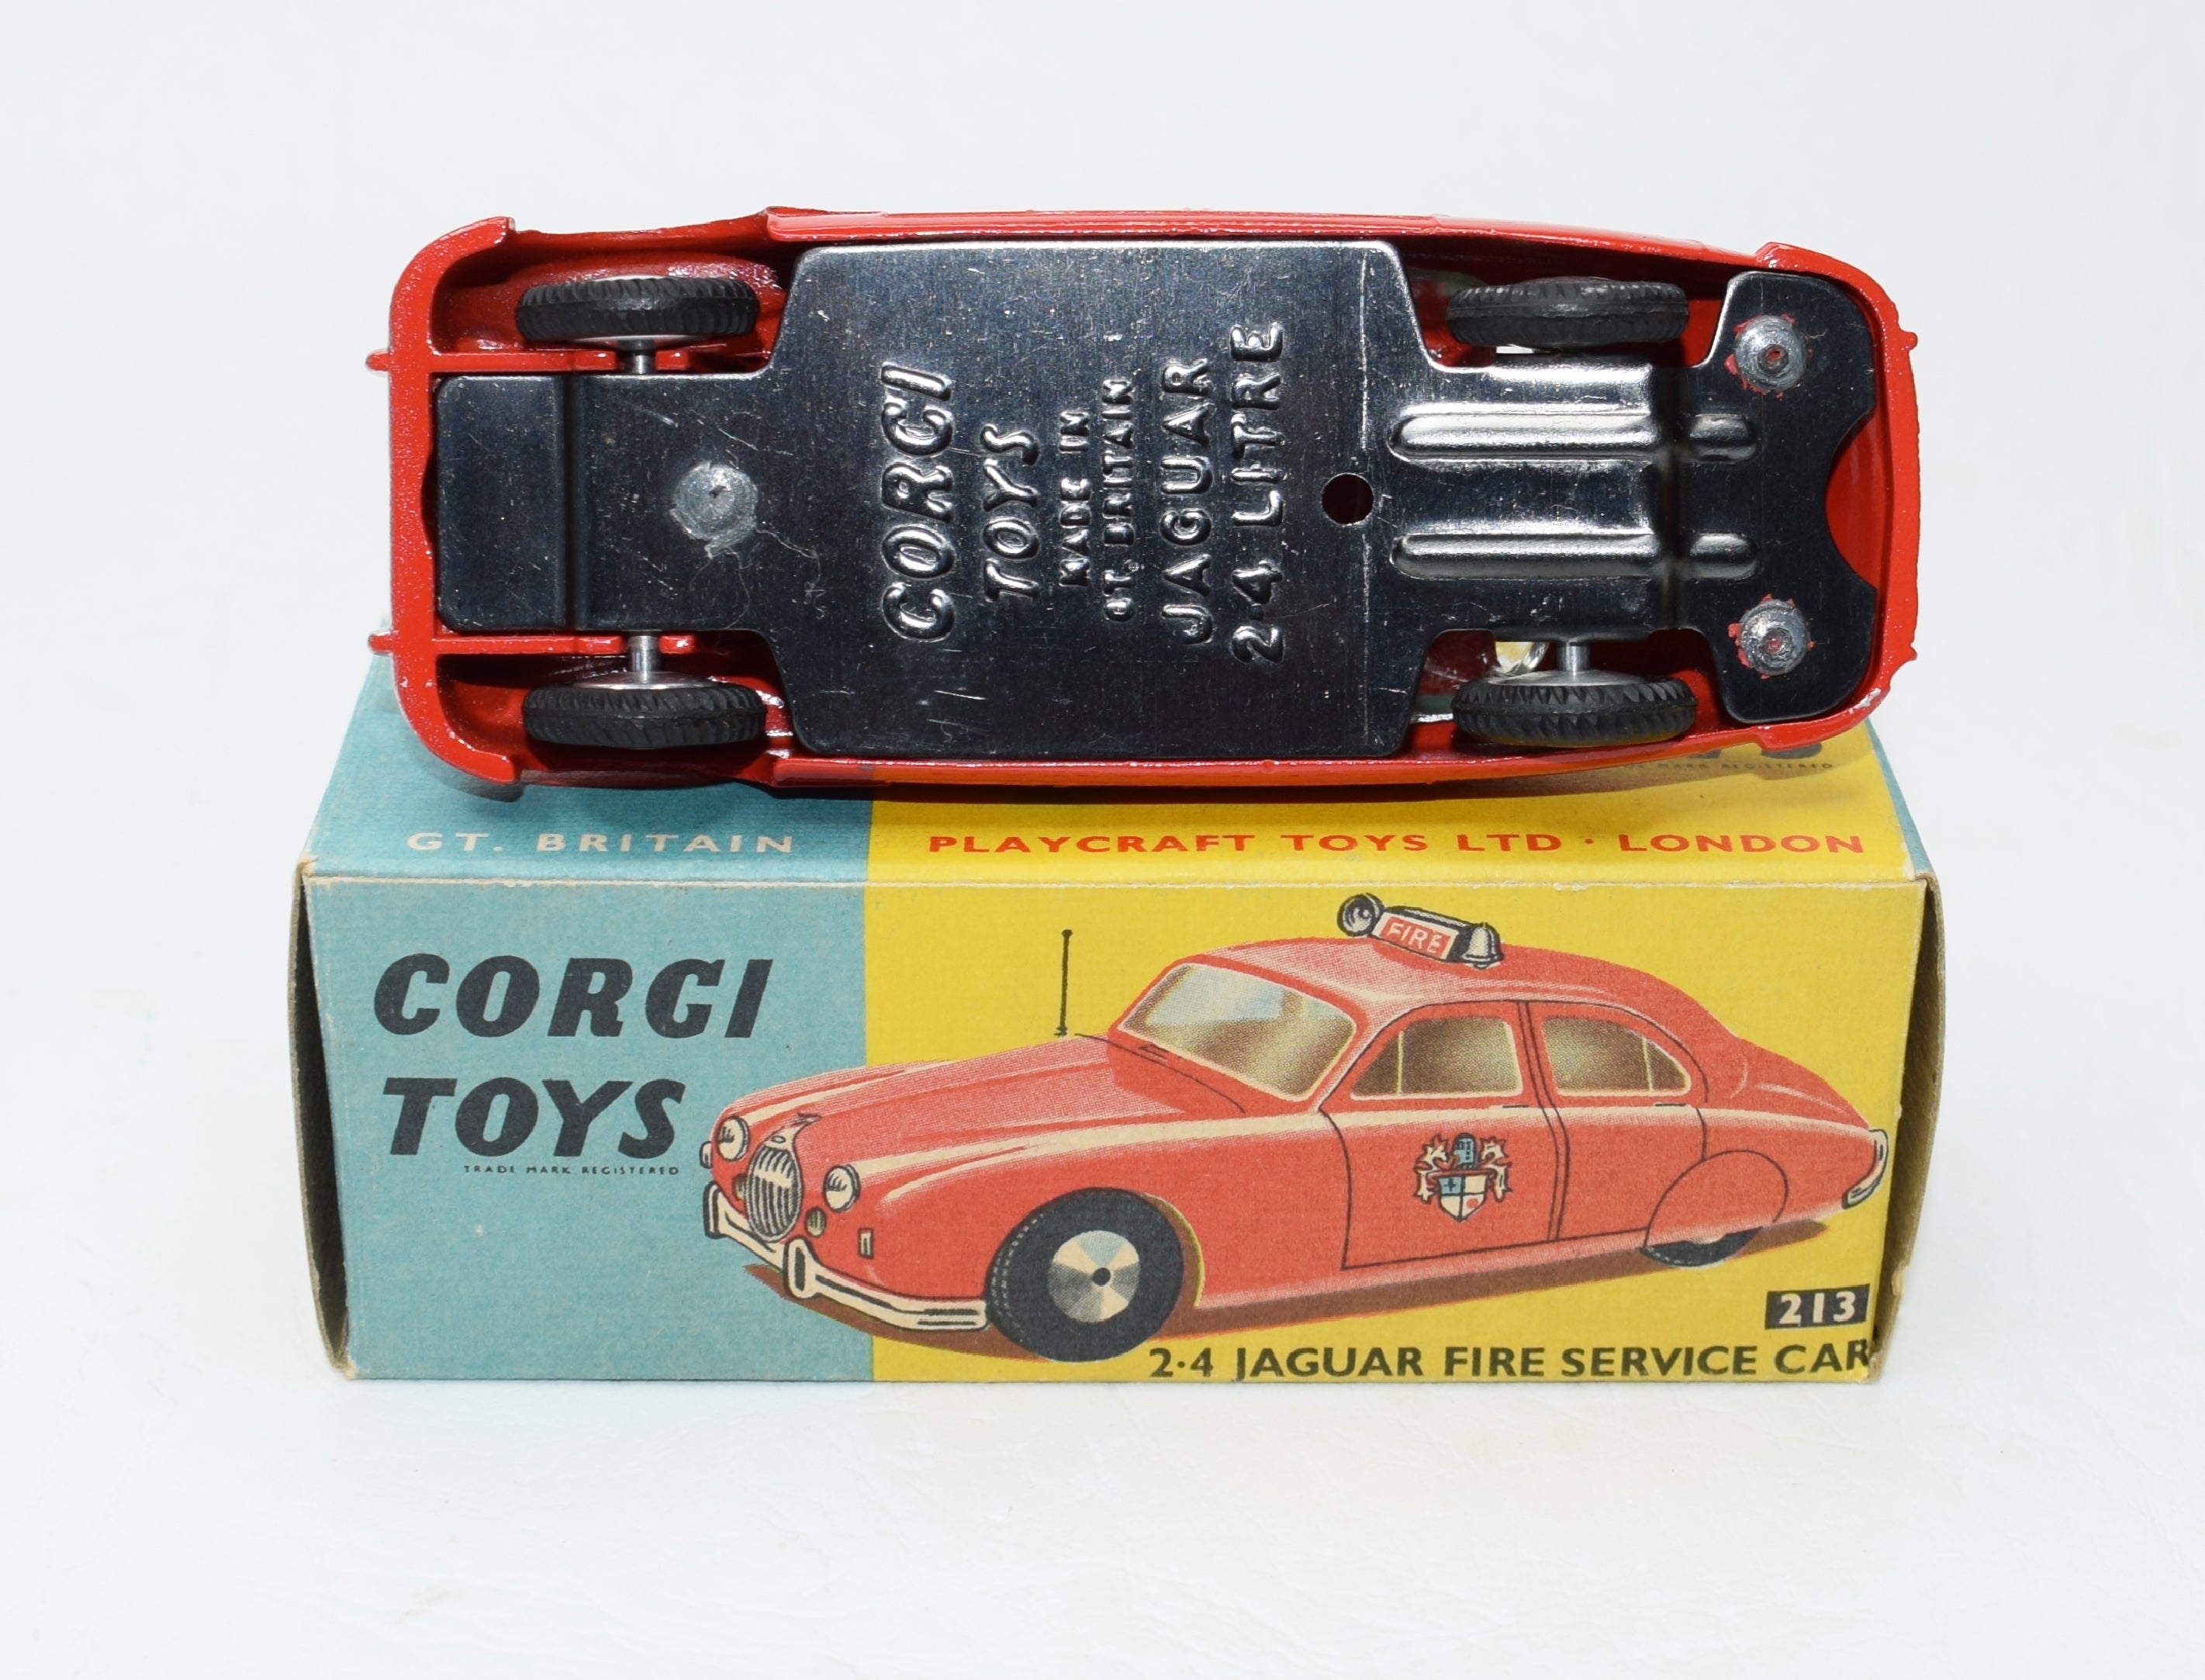 Corgi toys 213 2.4 Jaguar Fire Car Very Near Mint/Boxed (C.C